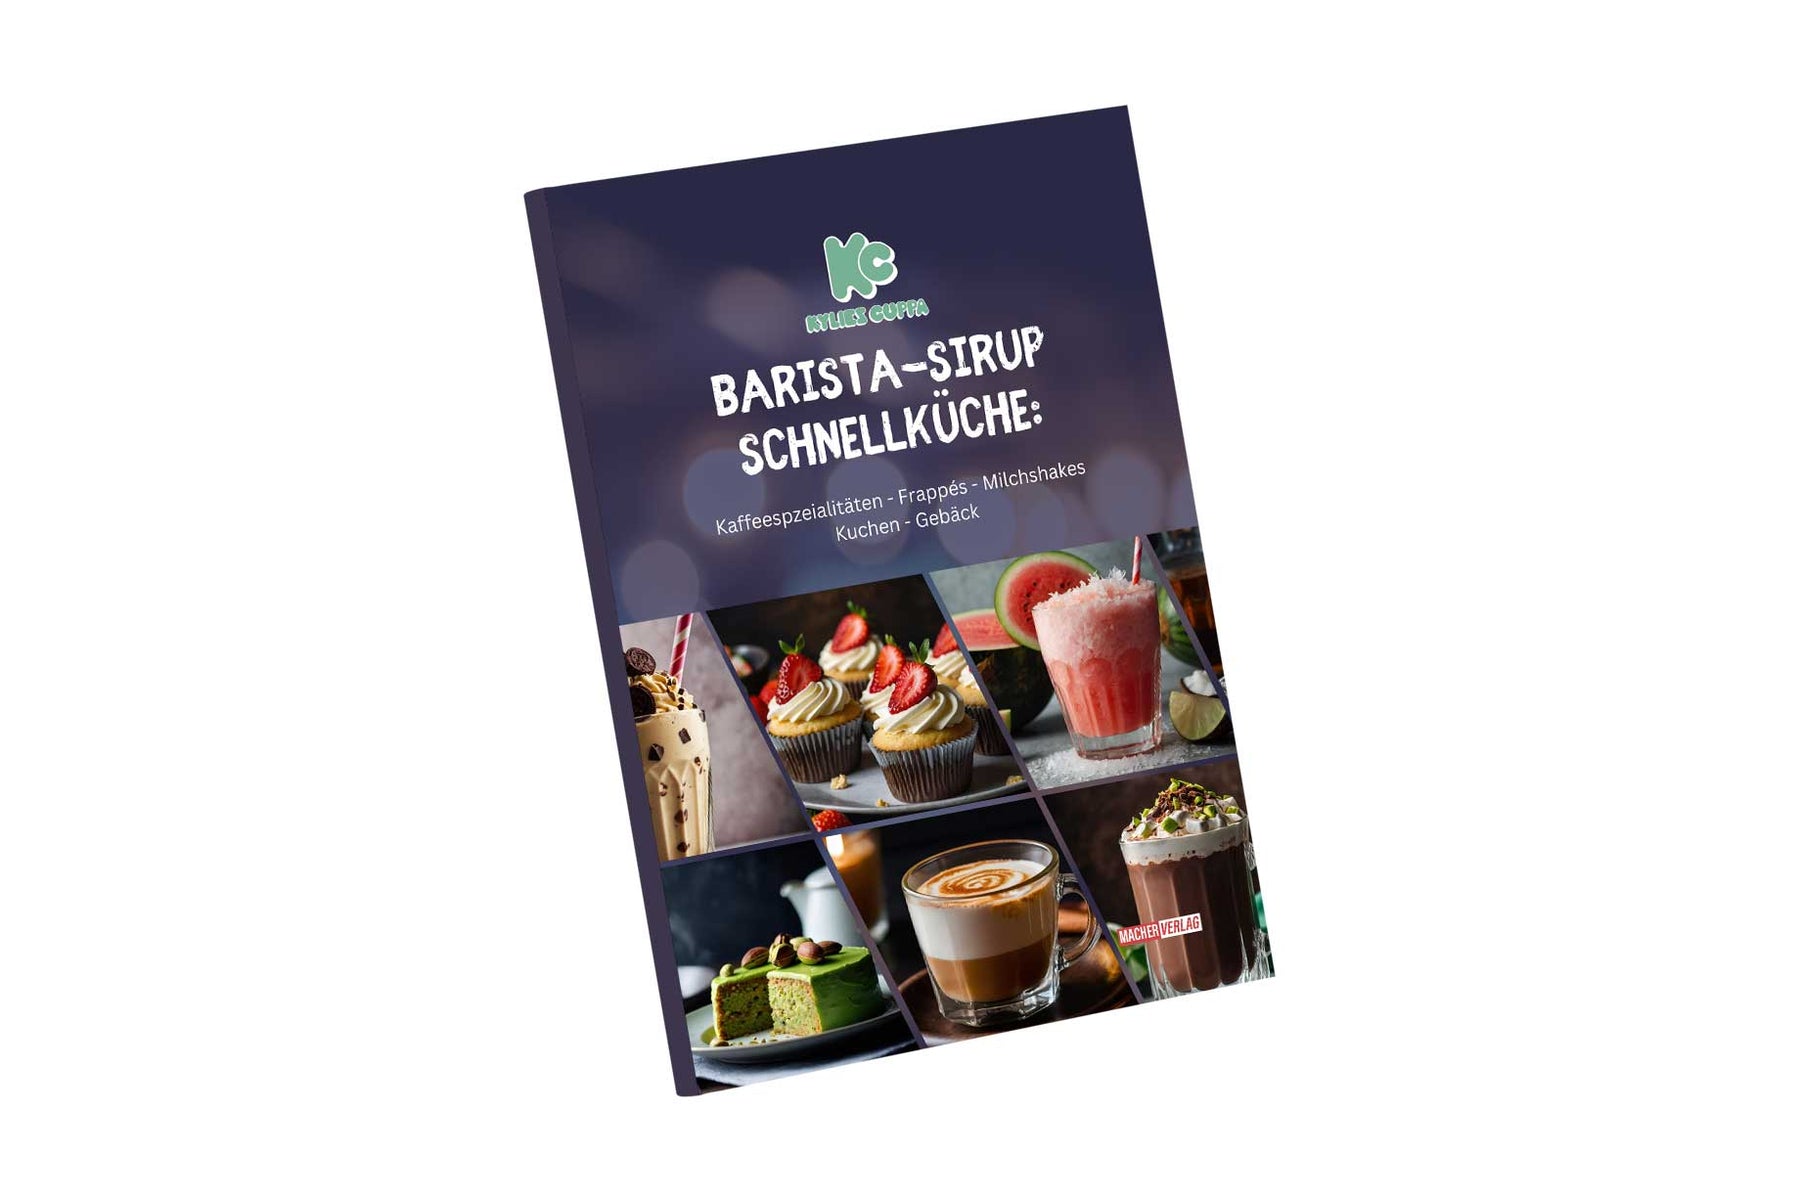 Barista-Sirup Schnellküche Rezeptbuch